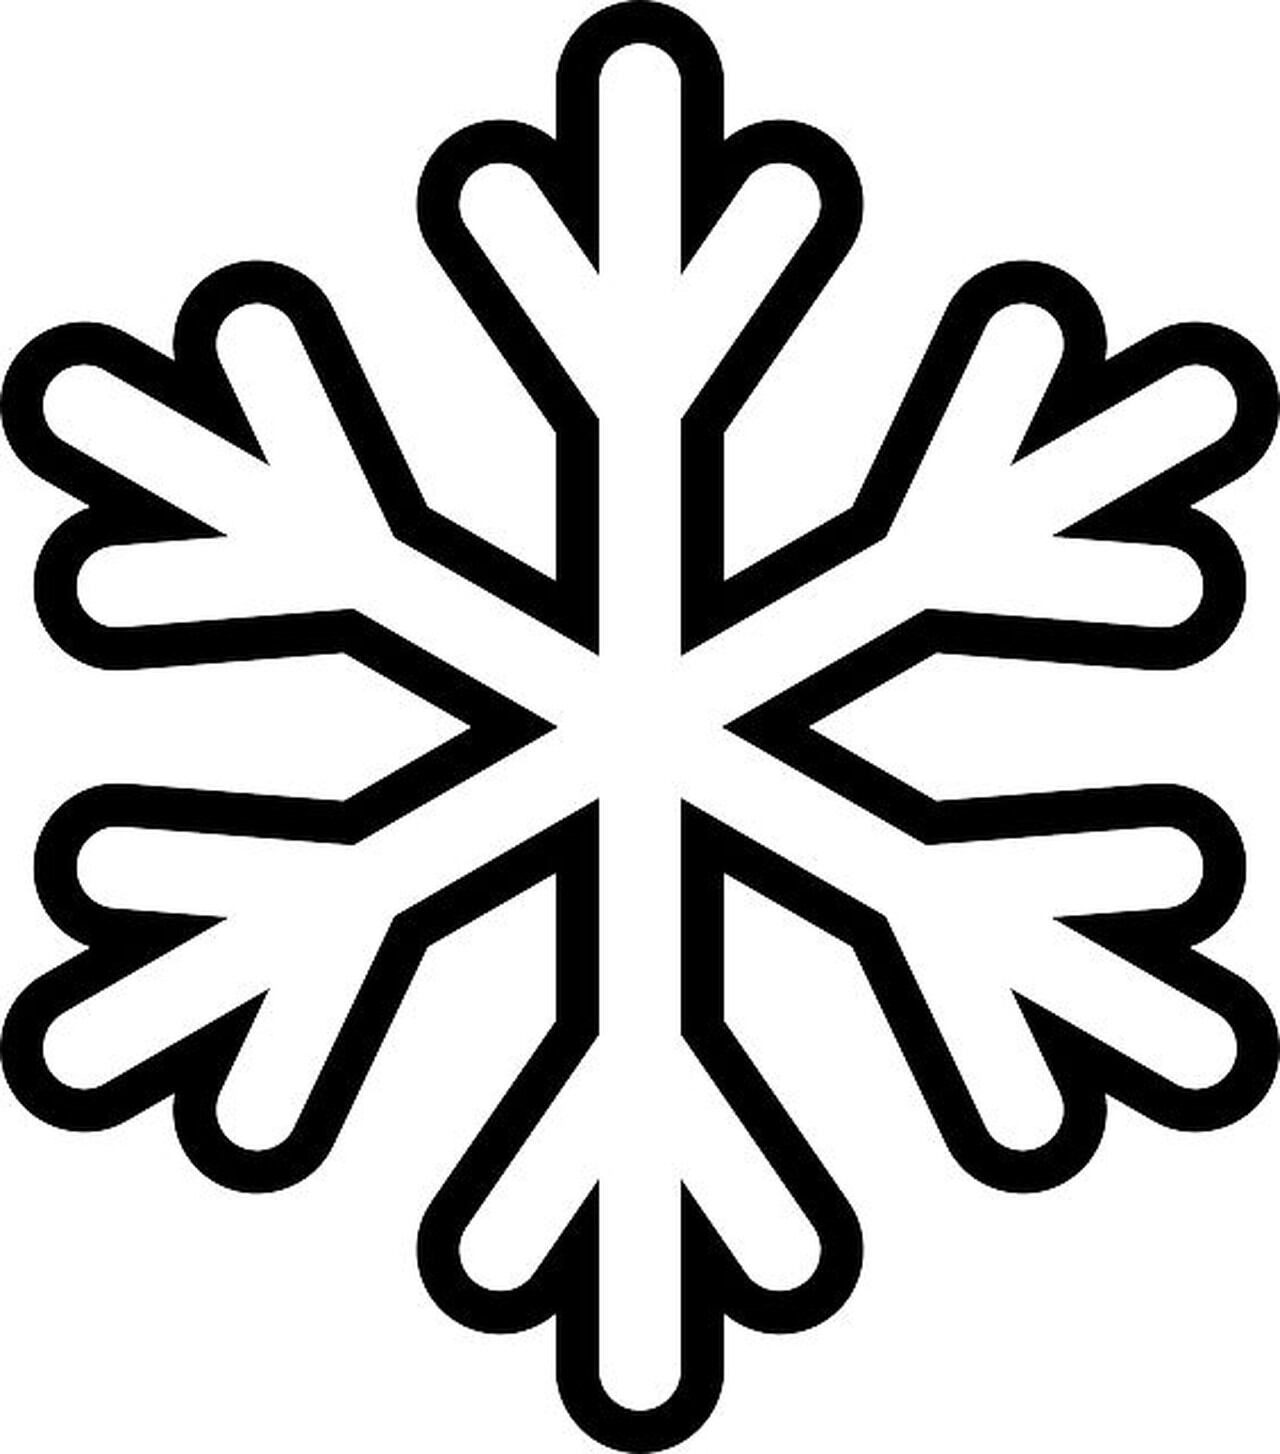 Copos de nieve: 5 plantillas para imprimir y hacer los adornos de Navidad